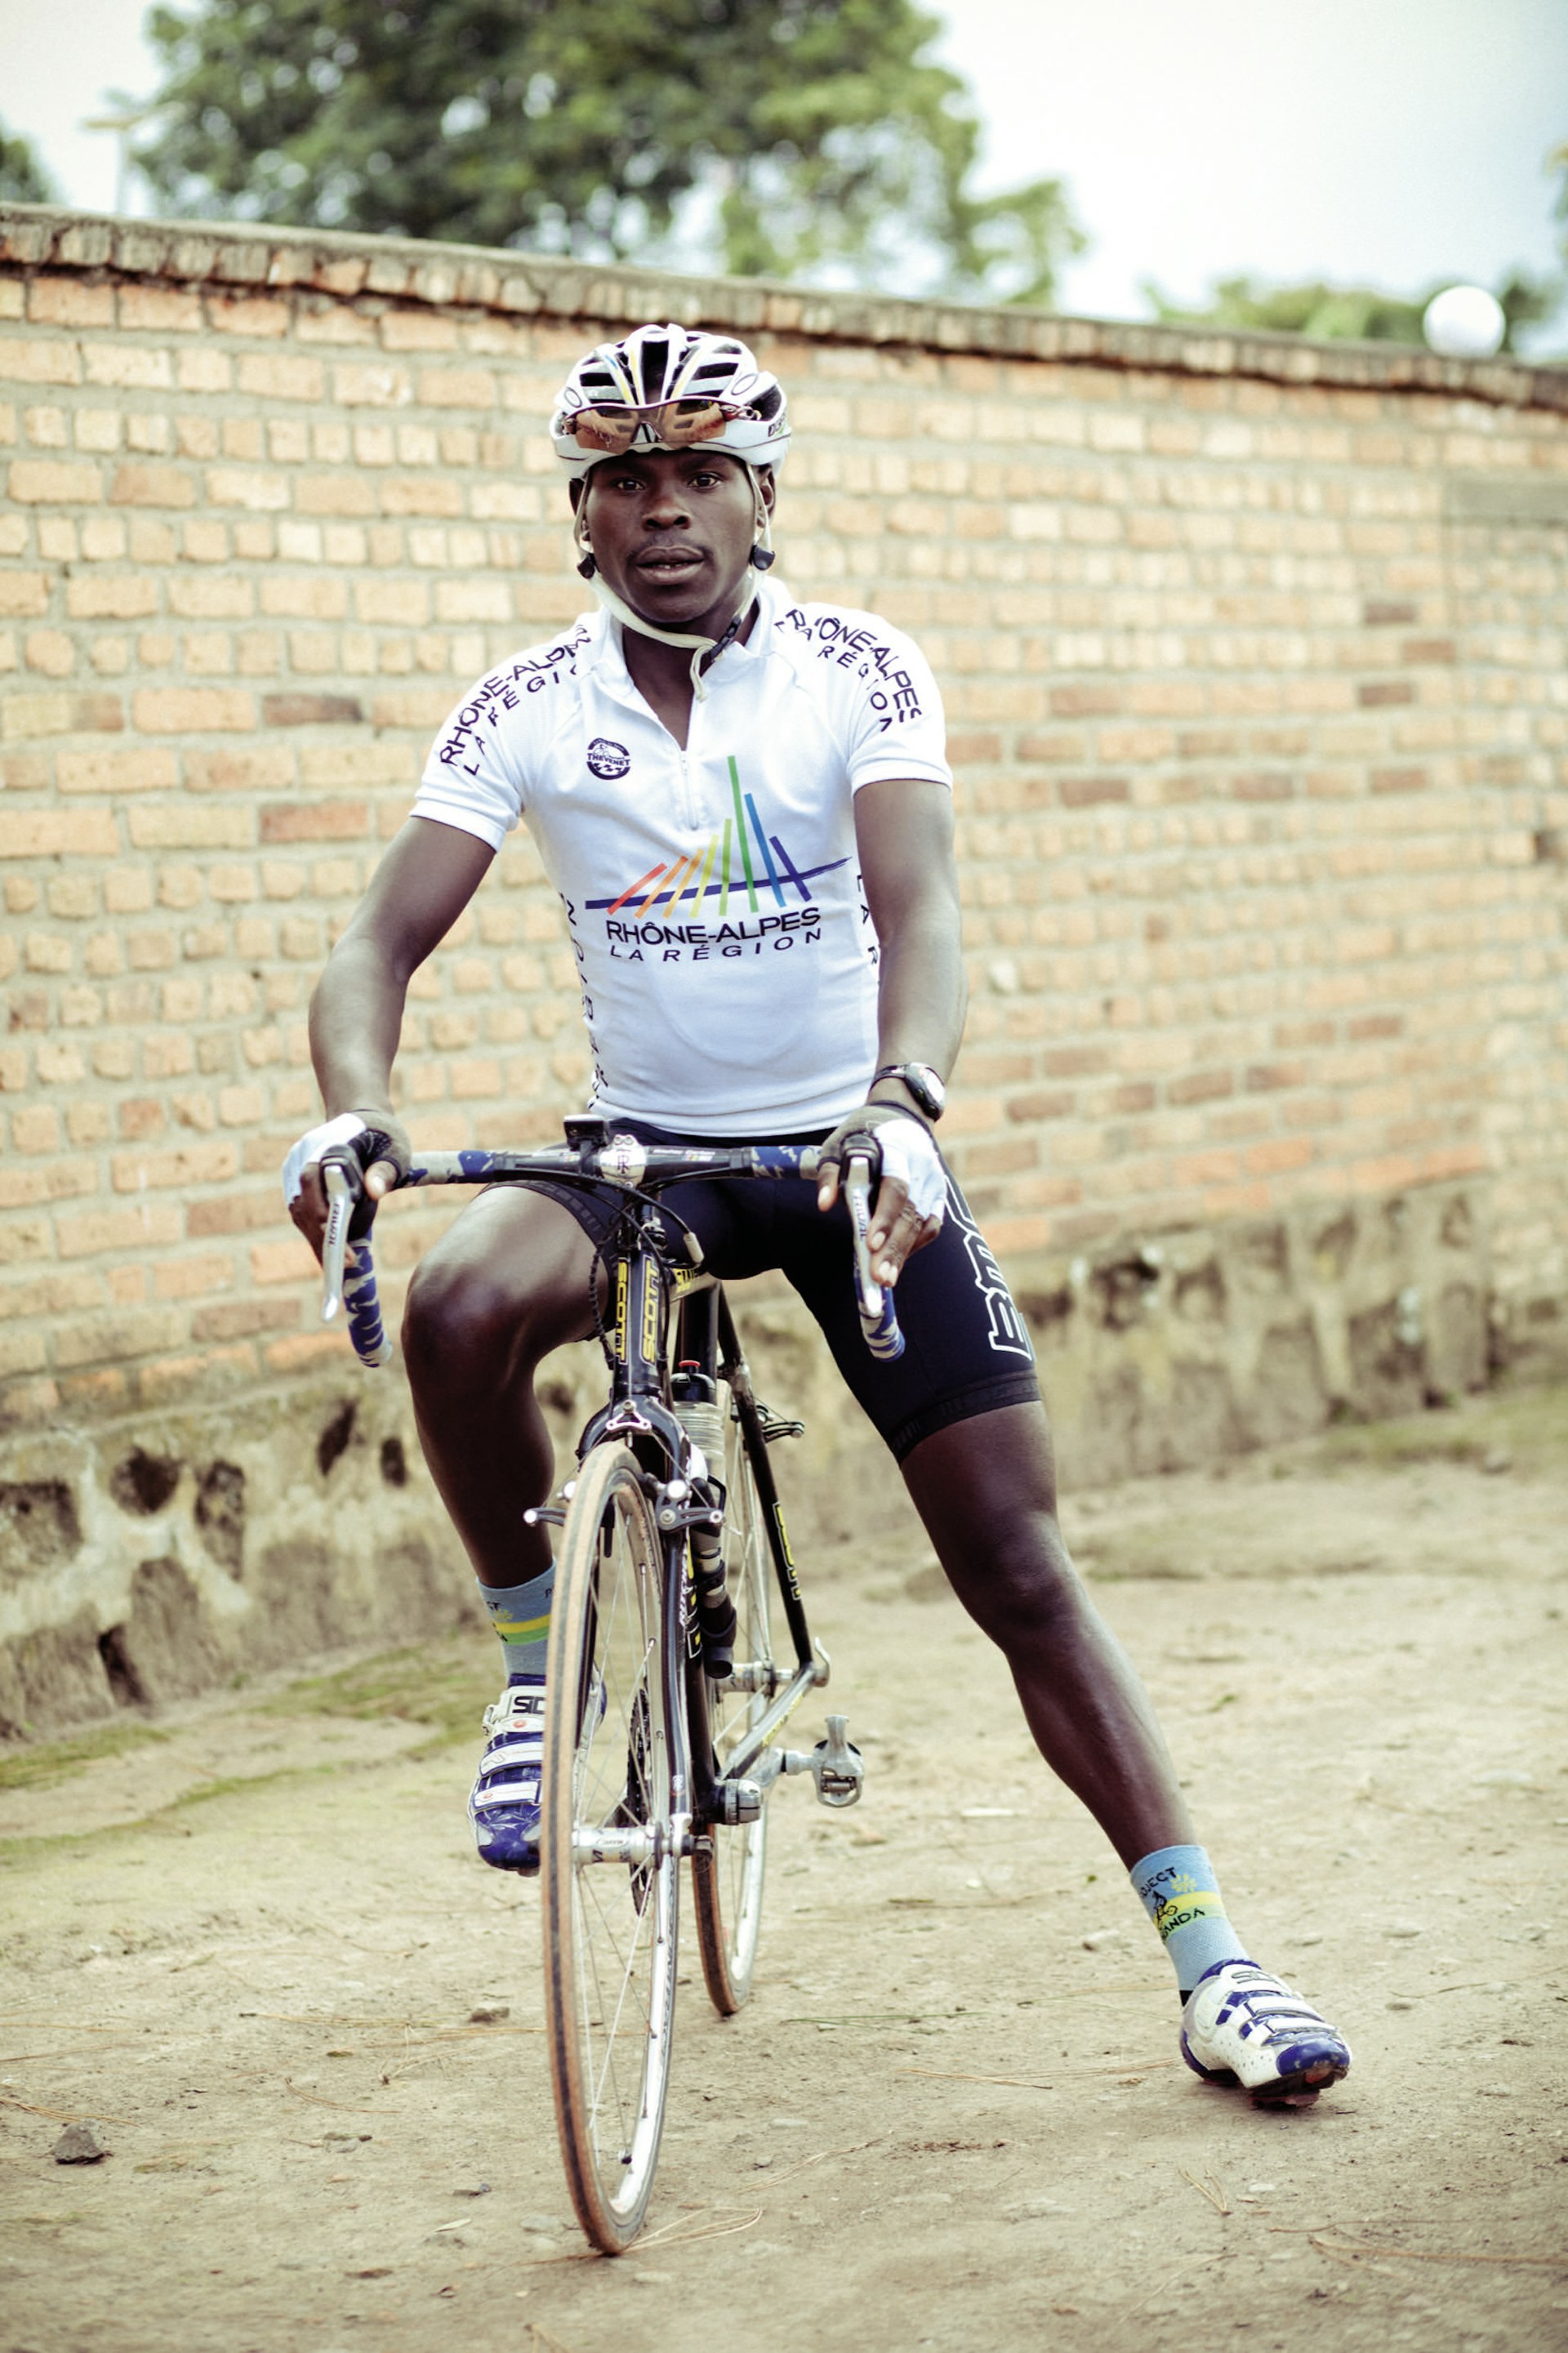 Gasore Hategeka, aged 22. A pro cyclist with Team Rwanda